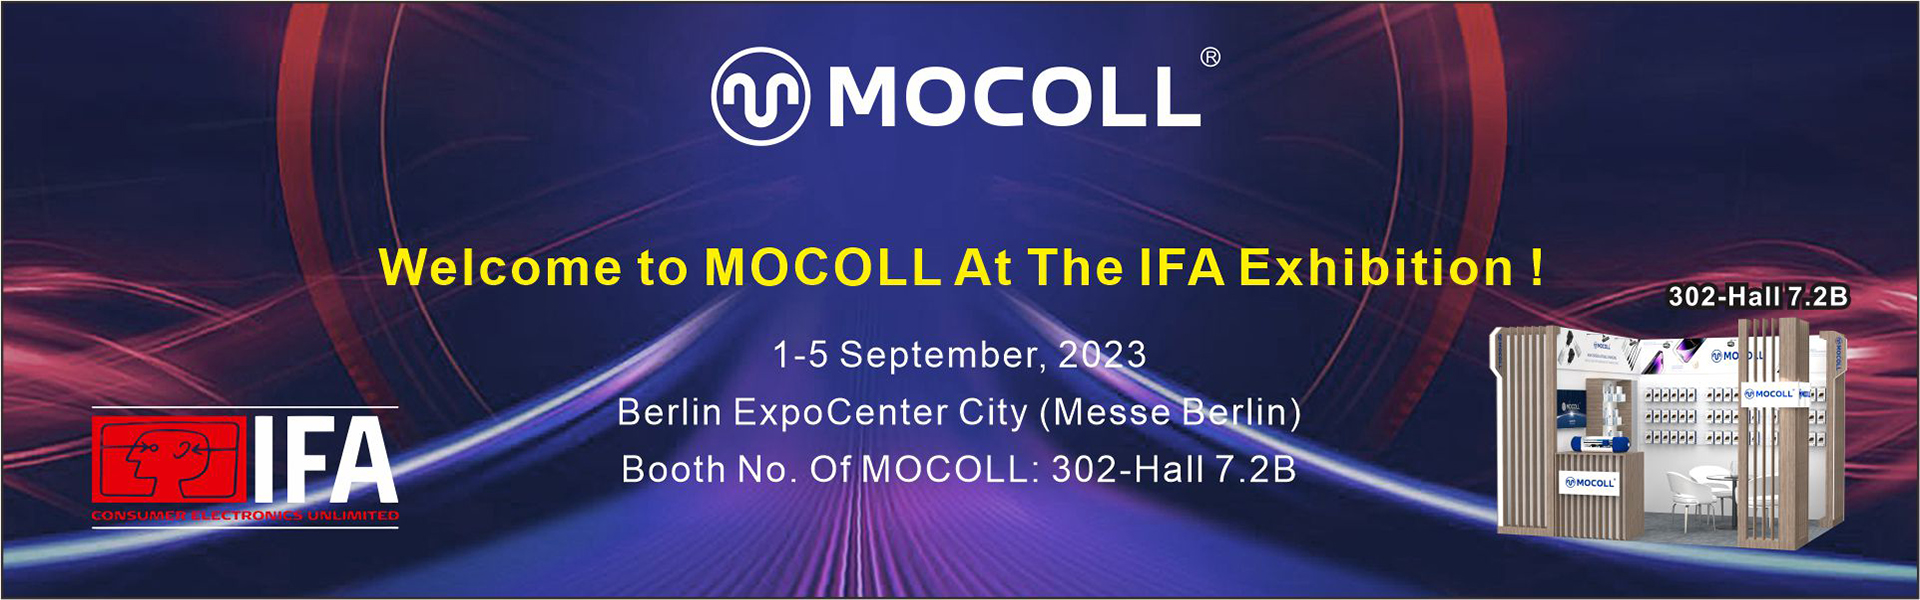 Willkommen bei MOCOLL auf der IFA-Ausstellung!